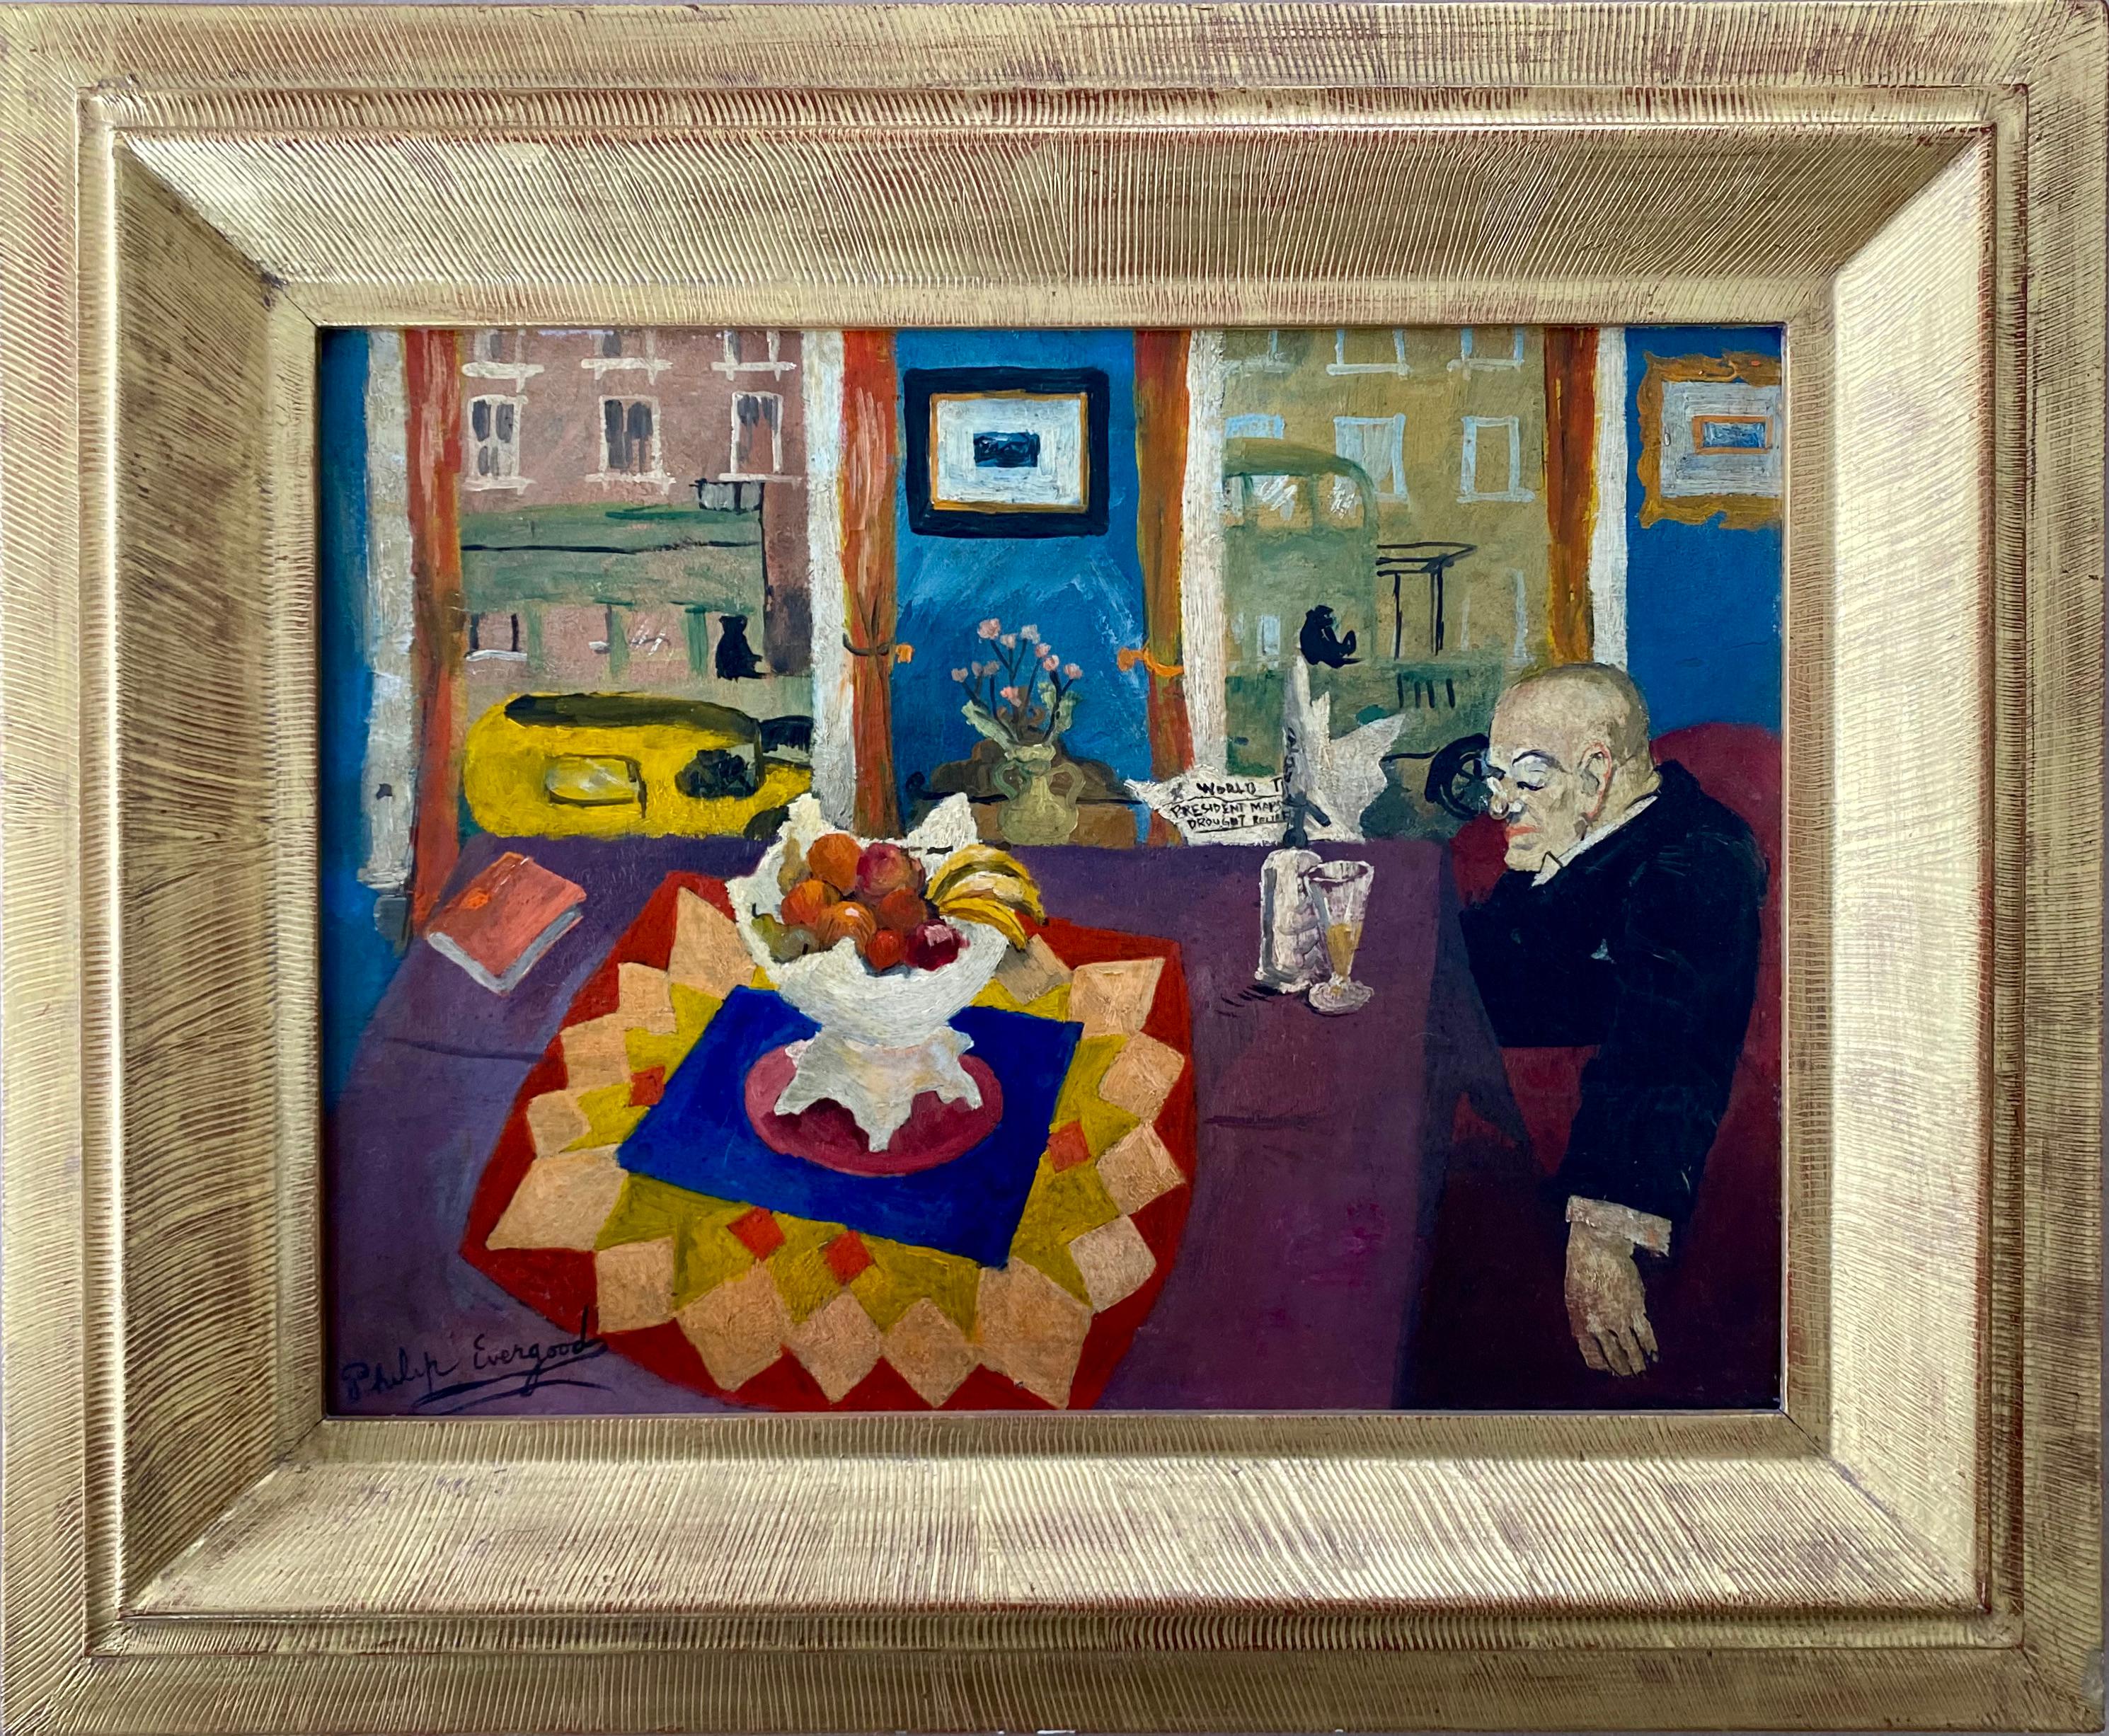 Intérieur avec un homme à table Modernisme américain Réalisme social WPA Peinture moderne

Philip Evergood (1901 - 1973) Untitled (Interior with Man at Table), c. 1932, huile sur panneau, 11 1/2 x 15 3/4 inches. Signé en bas à gauche. Provenance :